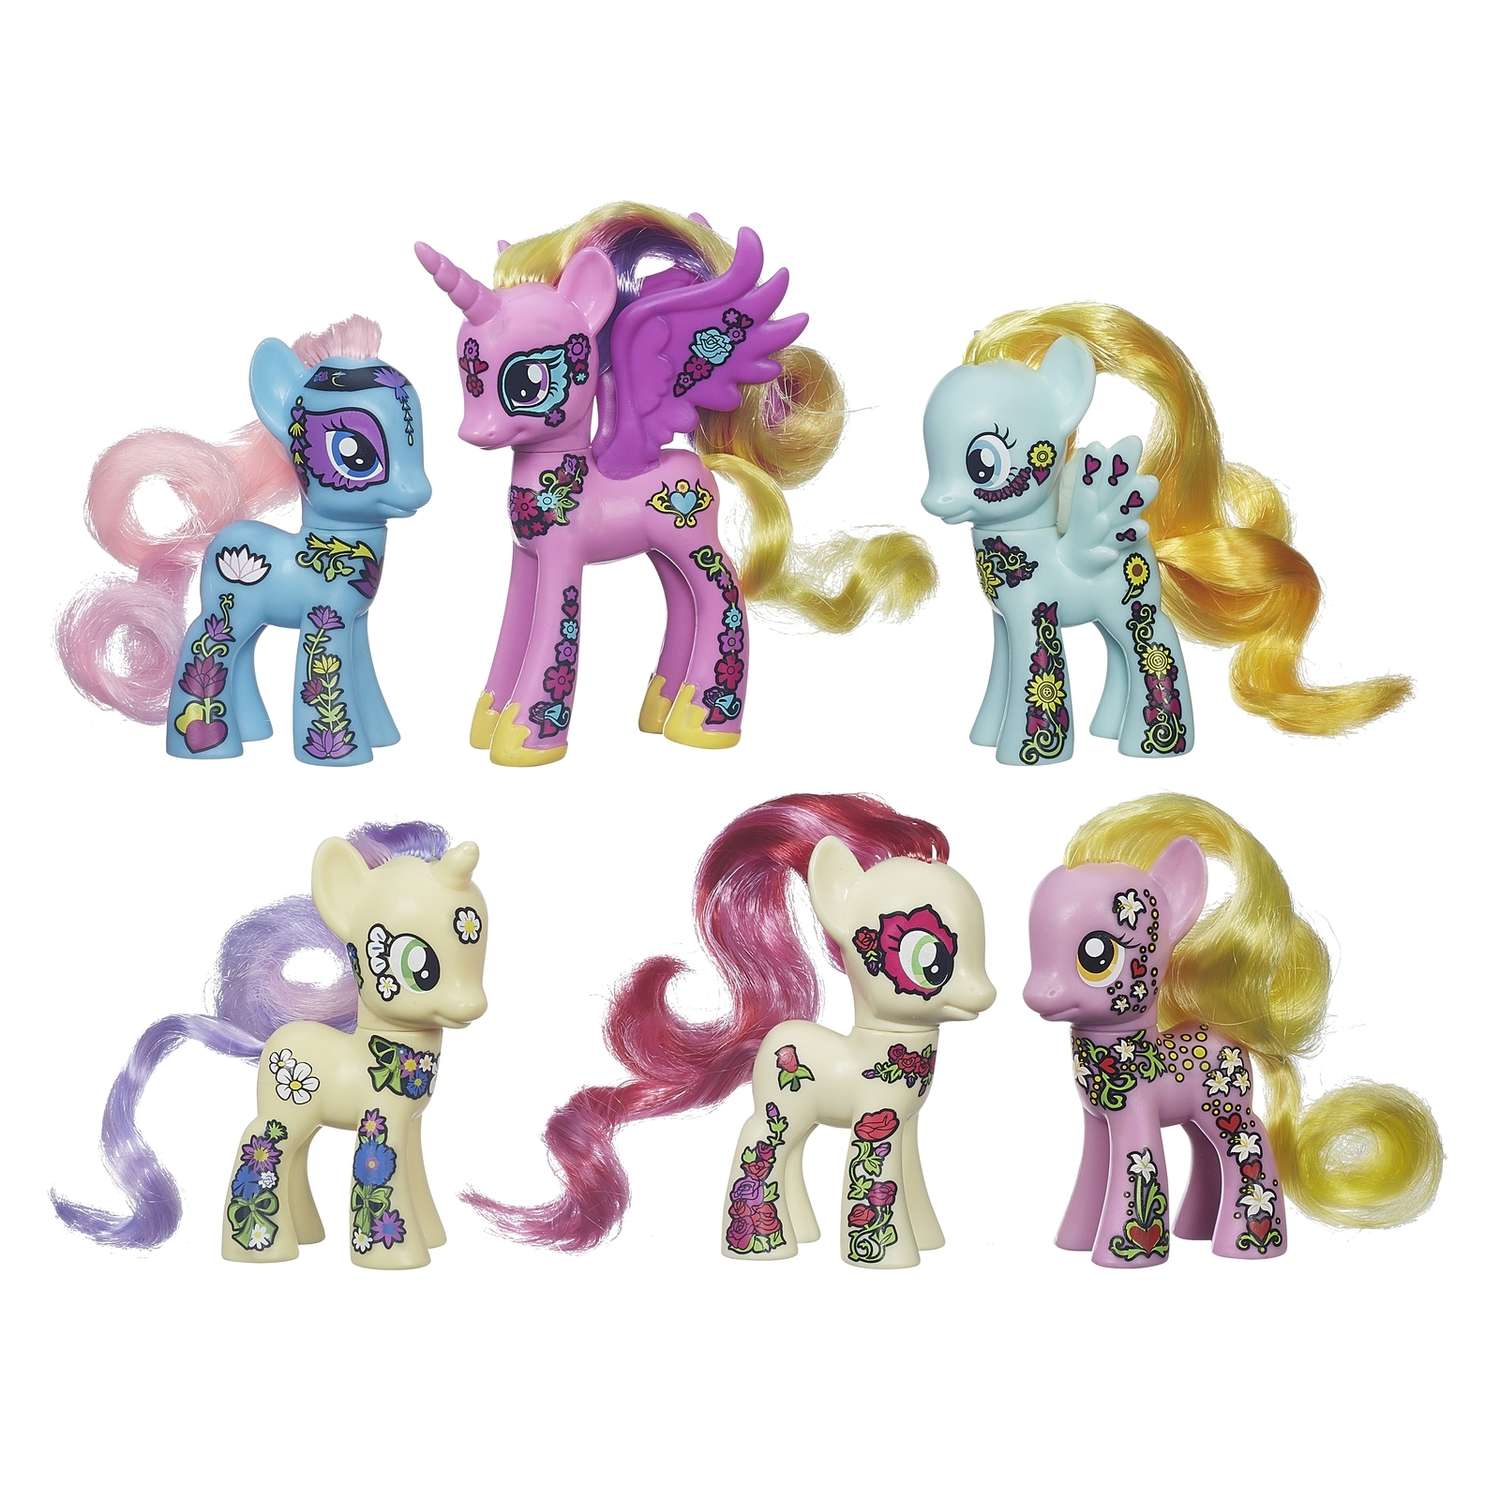 Май литл пони новое игрушки. Набор 6 пони Ponymania. My little Pony набор Ponymania. Ponymania Friendship Blossom. МЛП набор блоссом.